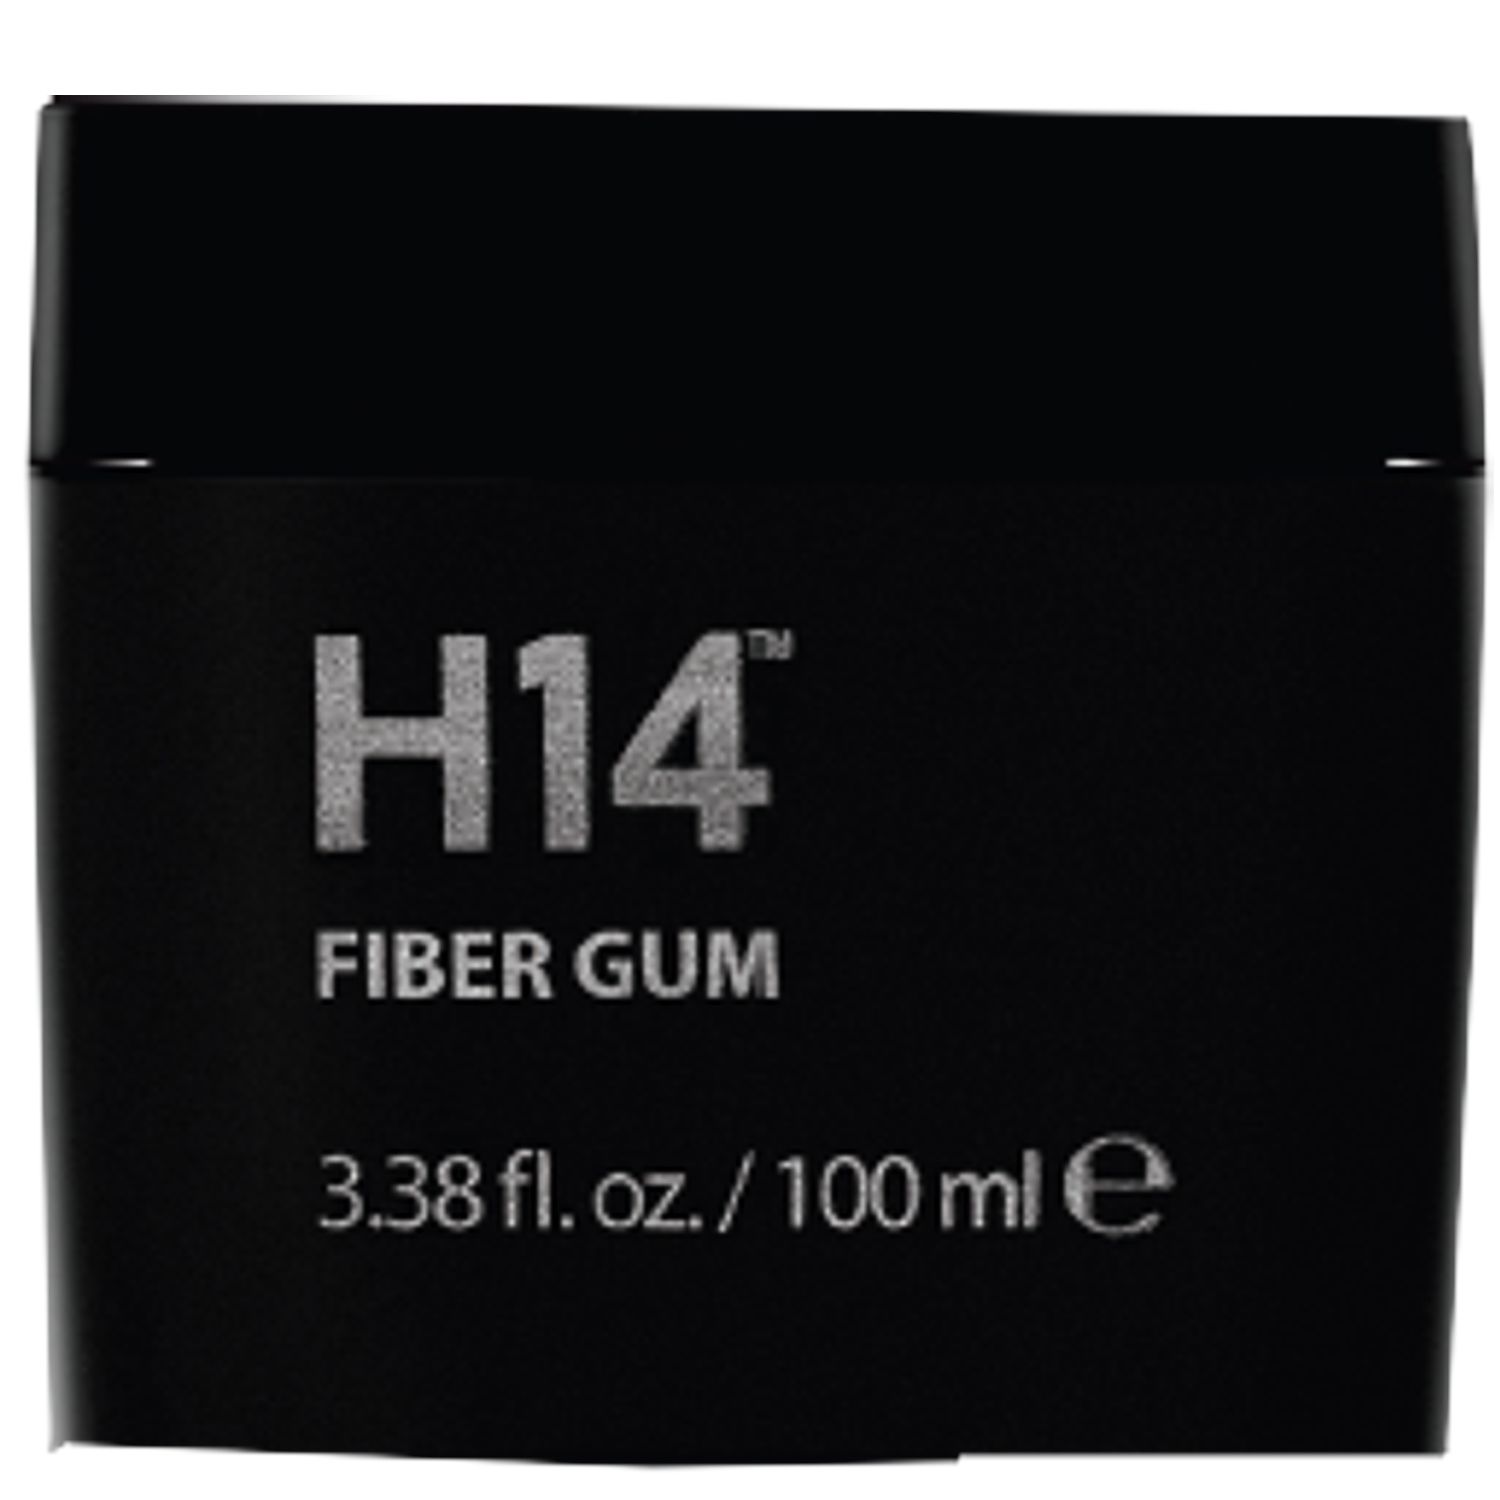 H14 Fiber Gum 100 ml